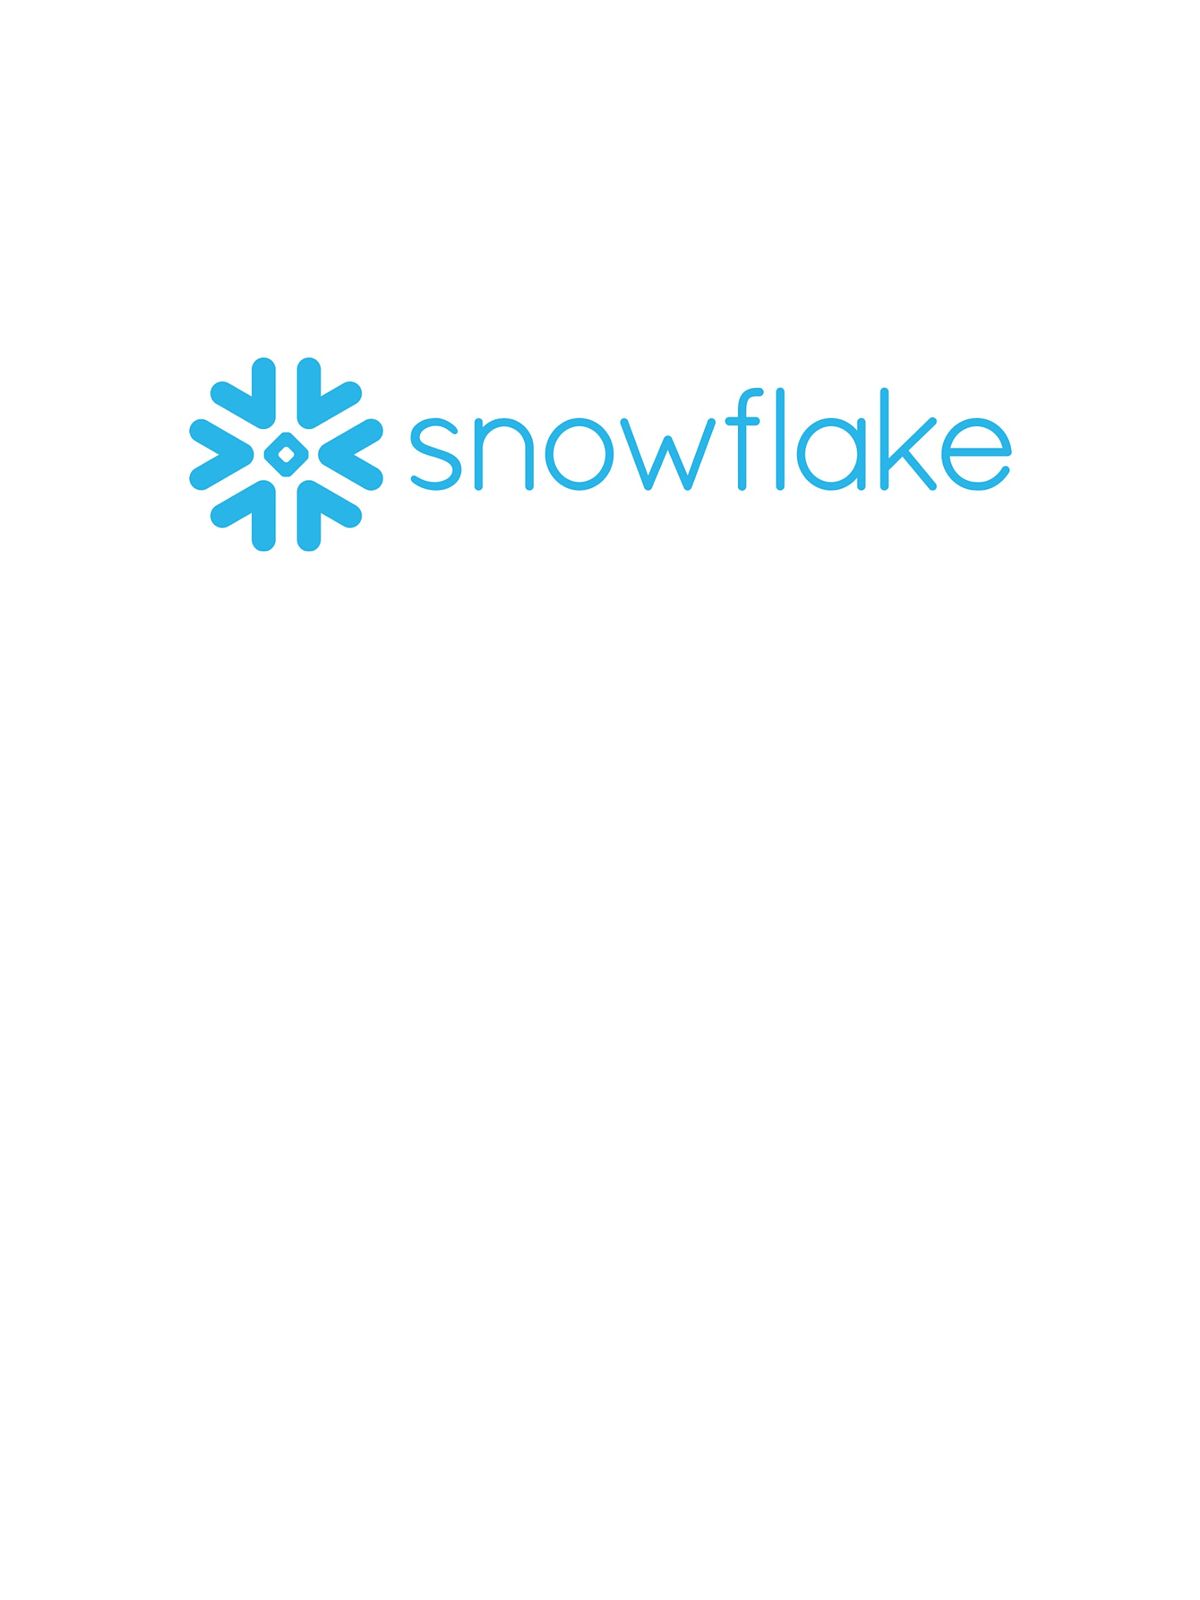 4 Weeks Snowflake cloud data platform Training Course Elk Grove